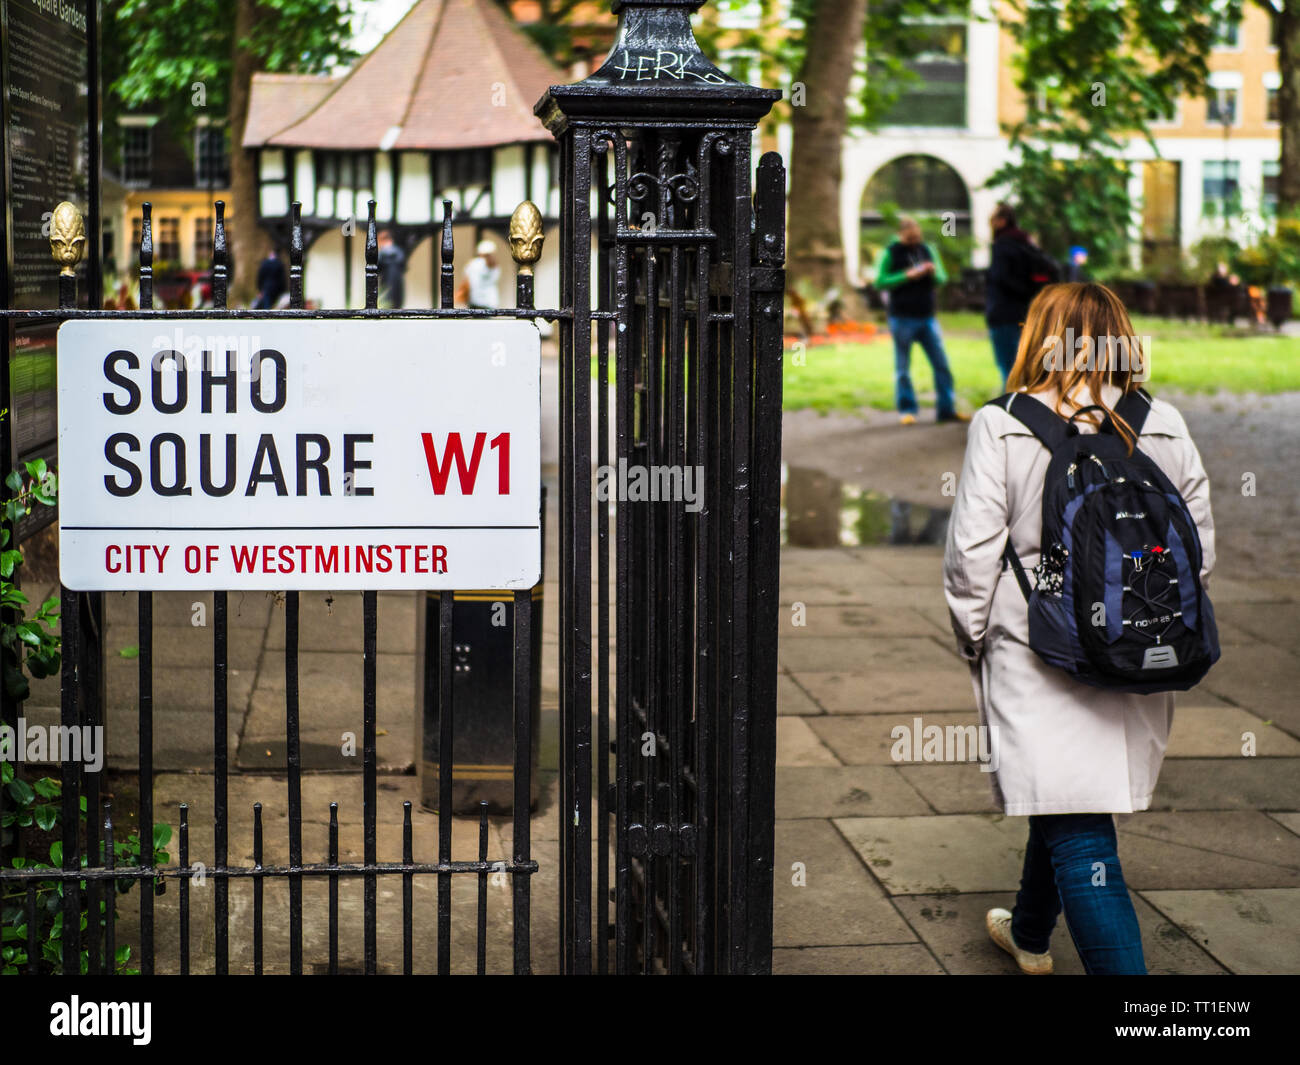 Soho Square W1 - Soho Square è uno spazio verde in Soho il quartiere del divertimento risalente al 1681 - Londra quartiere Soho di segnaletica stradale Foto Stock